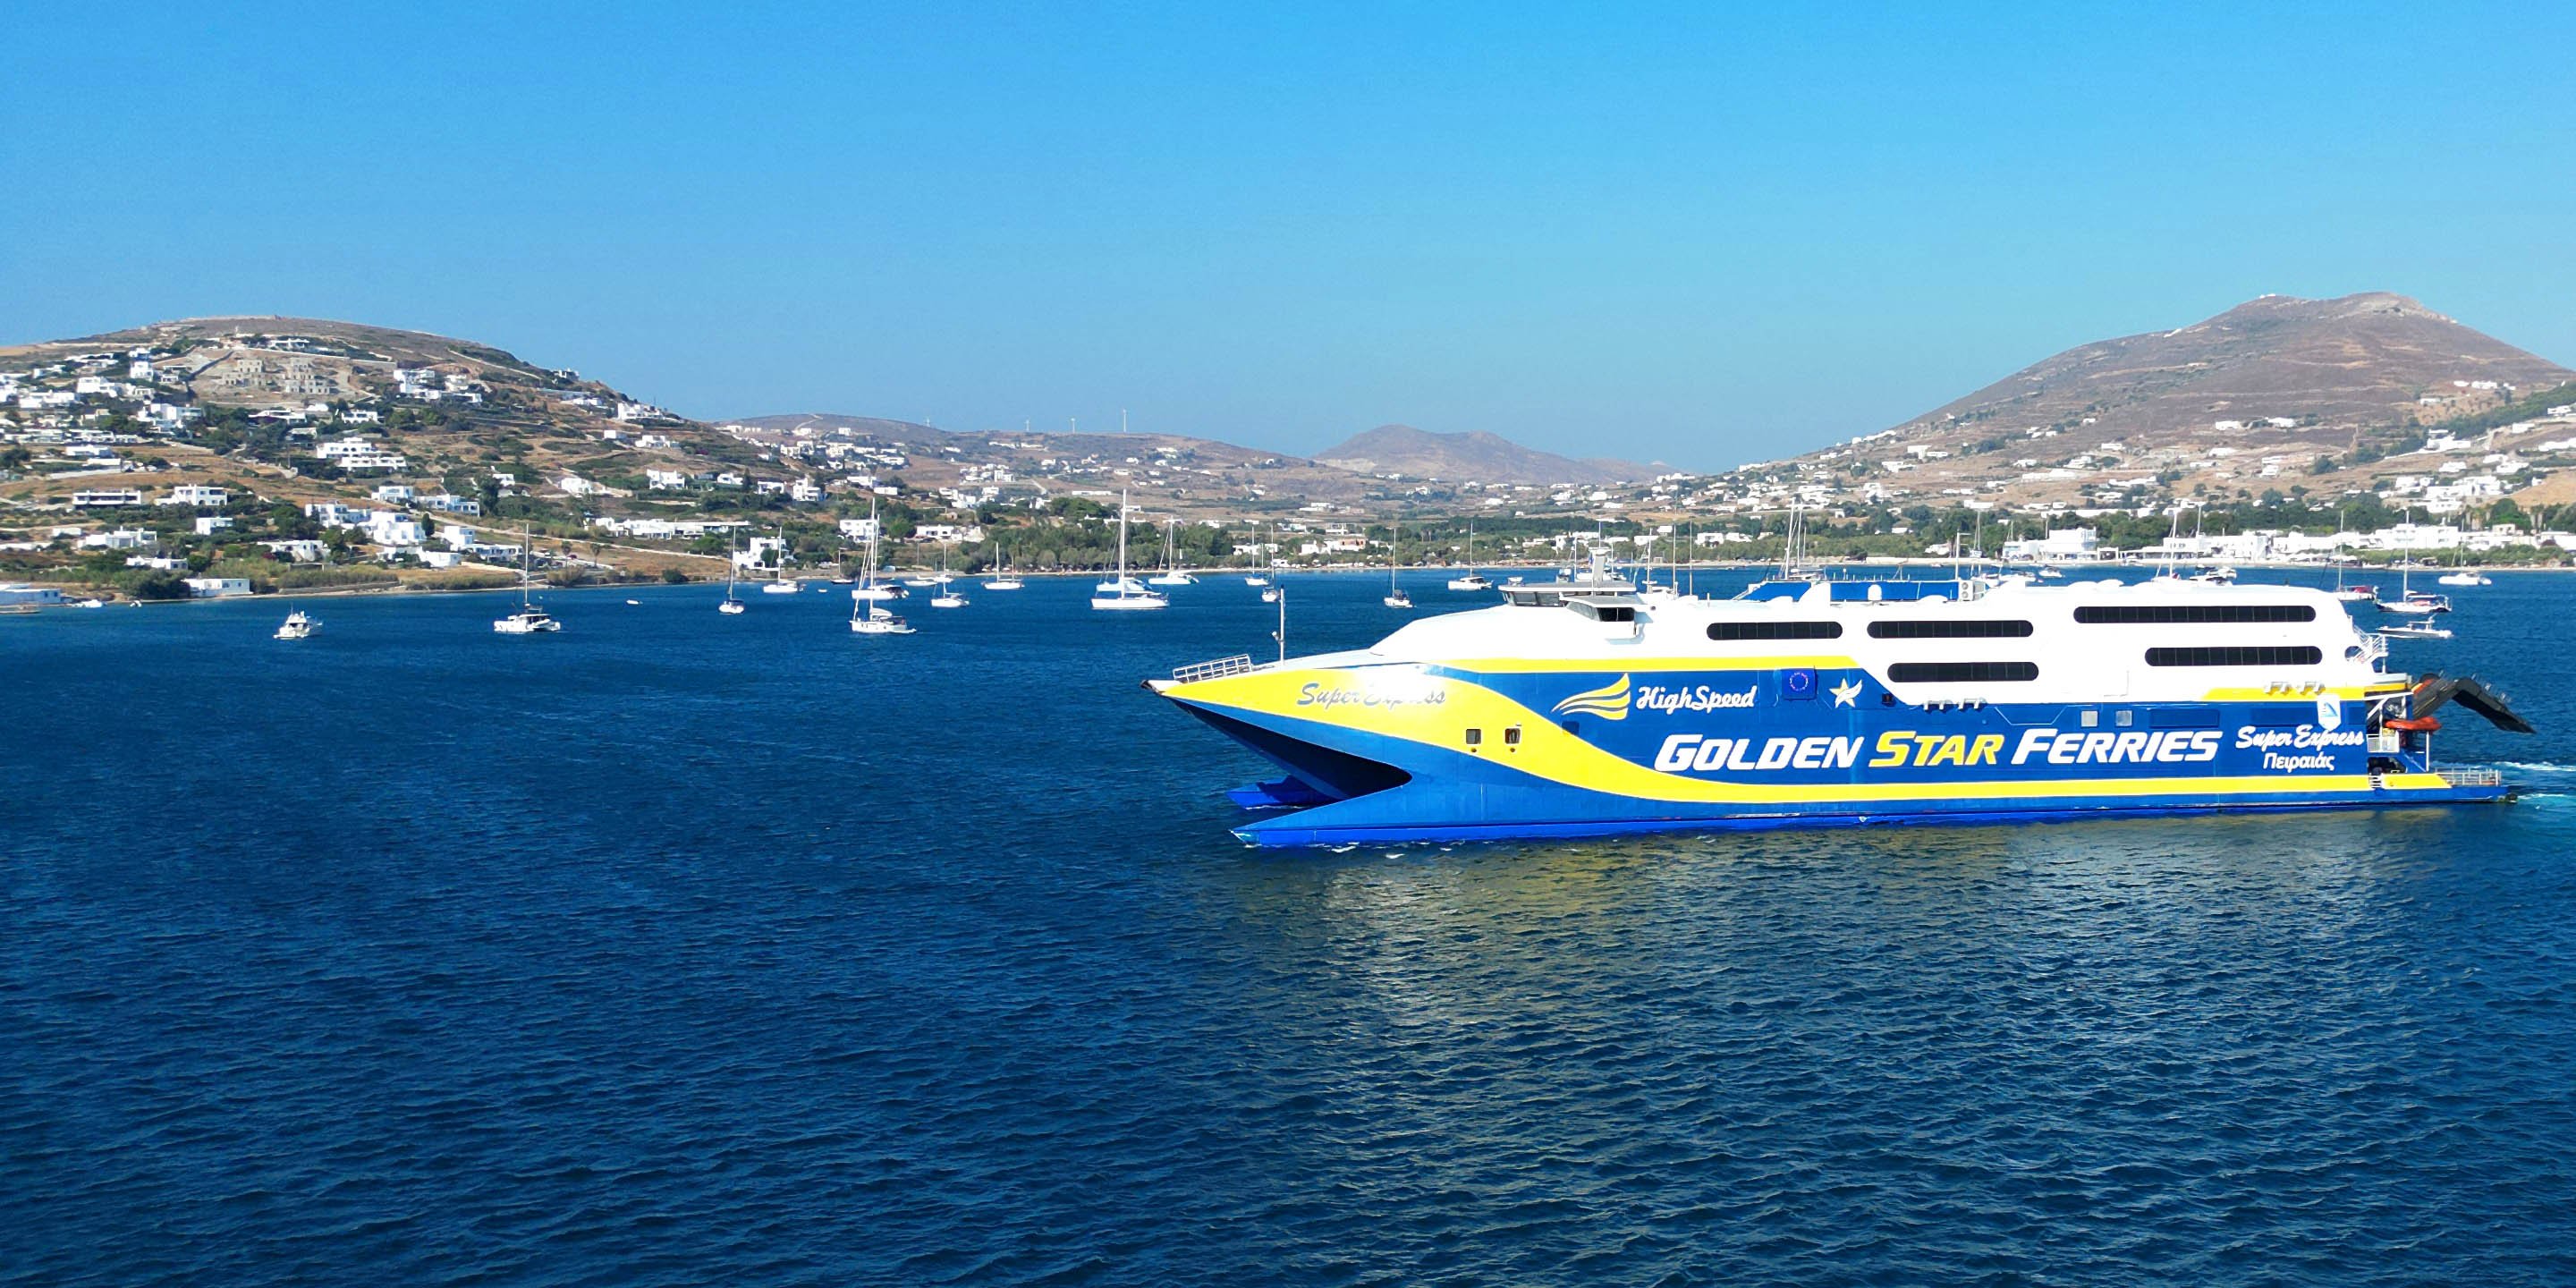 Le ferry à grande vitesse SuperExpress de Golden Star Ferries assure la liaison entre Paros et Mykonos.